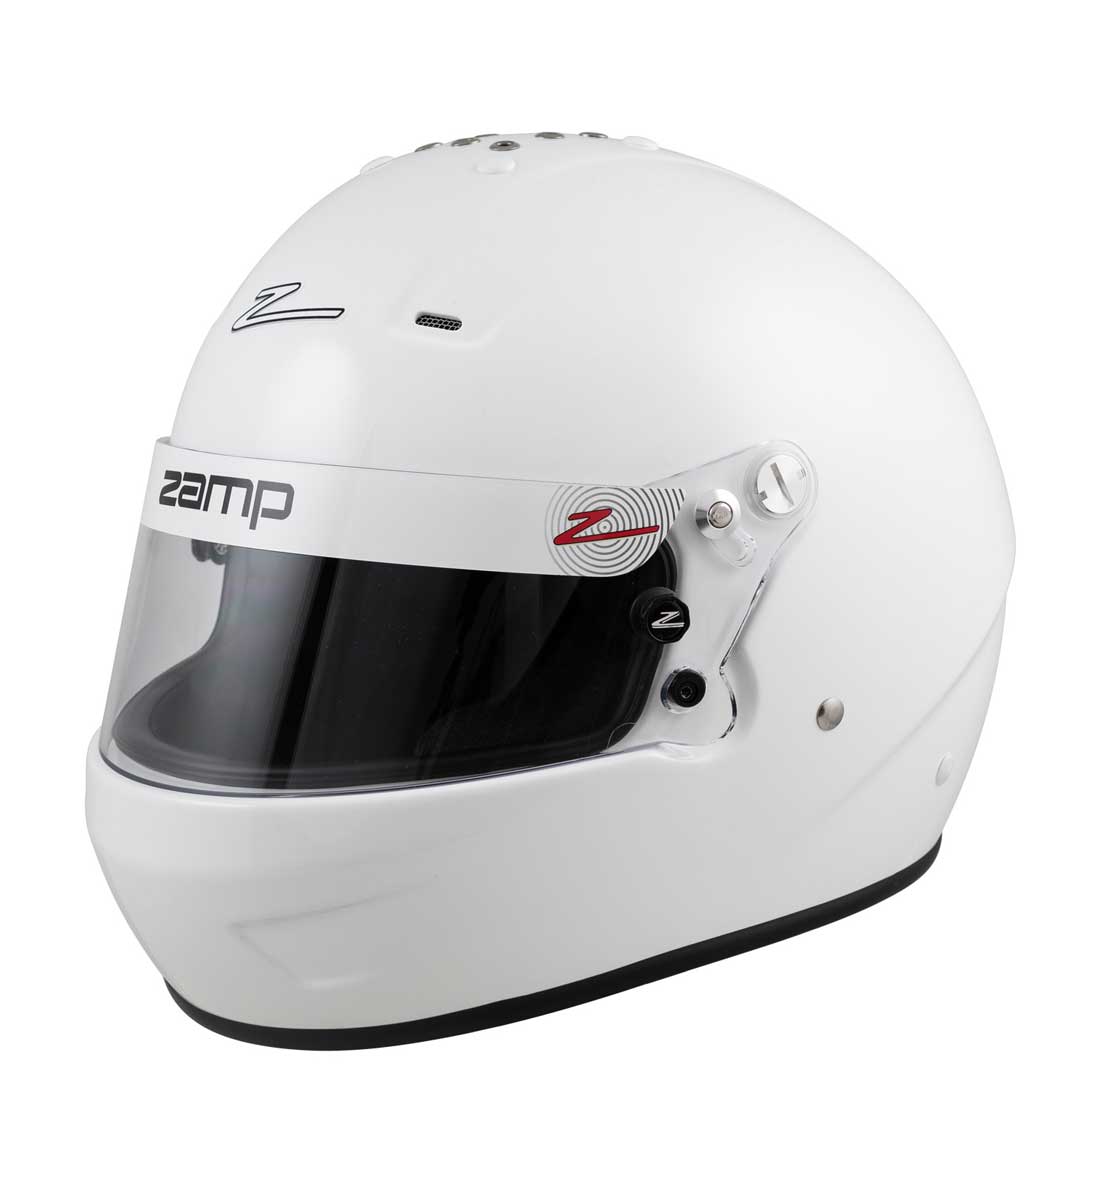 Zamp RZ 56 Helmet SA2020 - White